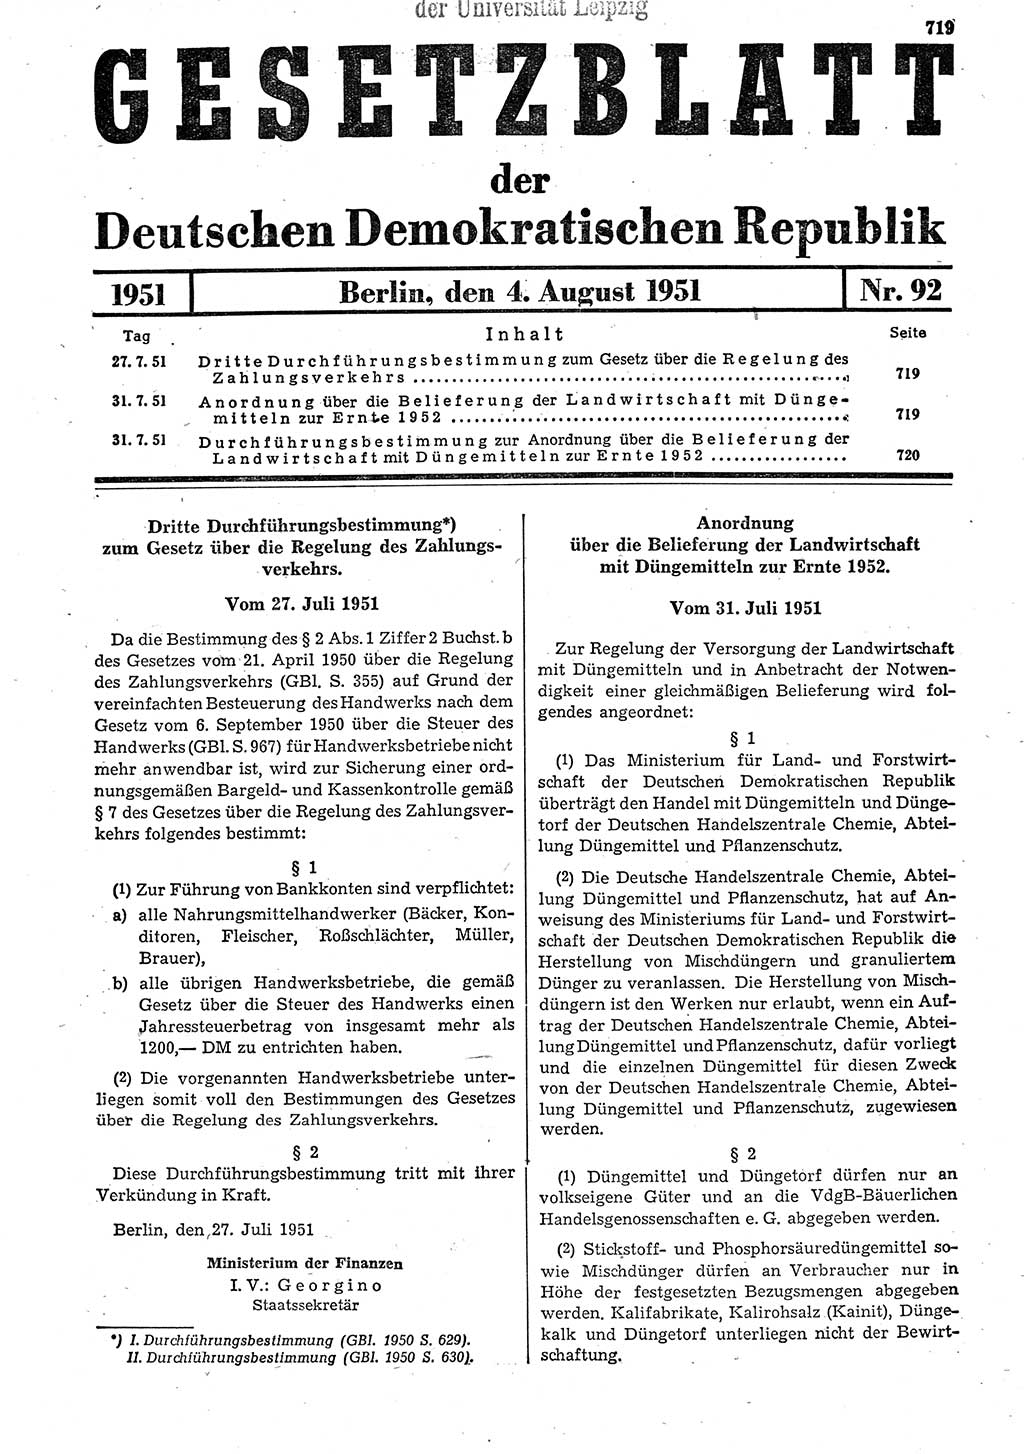 Gesetzblatt (GBl.) der Deutschen Demokratischen Republik (DDR) 1951, Seite 719 (GBl. DDR 1951, S. 719)